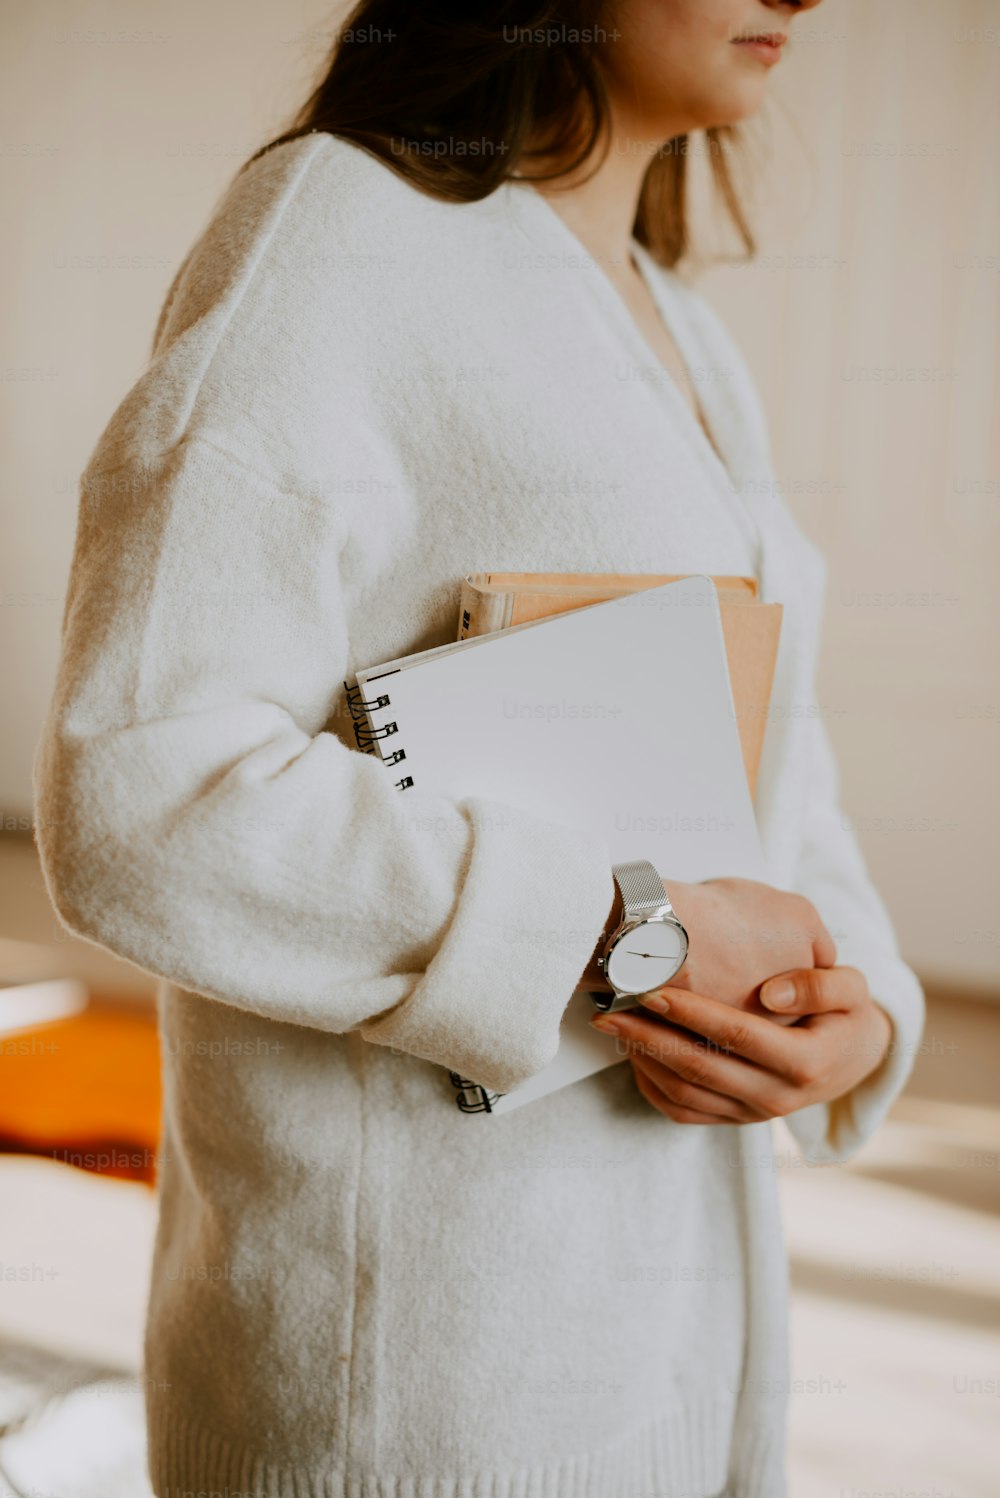 Une femme vêtue d’un pull blanc tenant un cahier et une montre